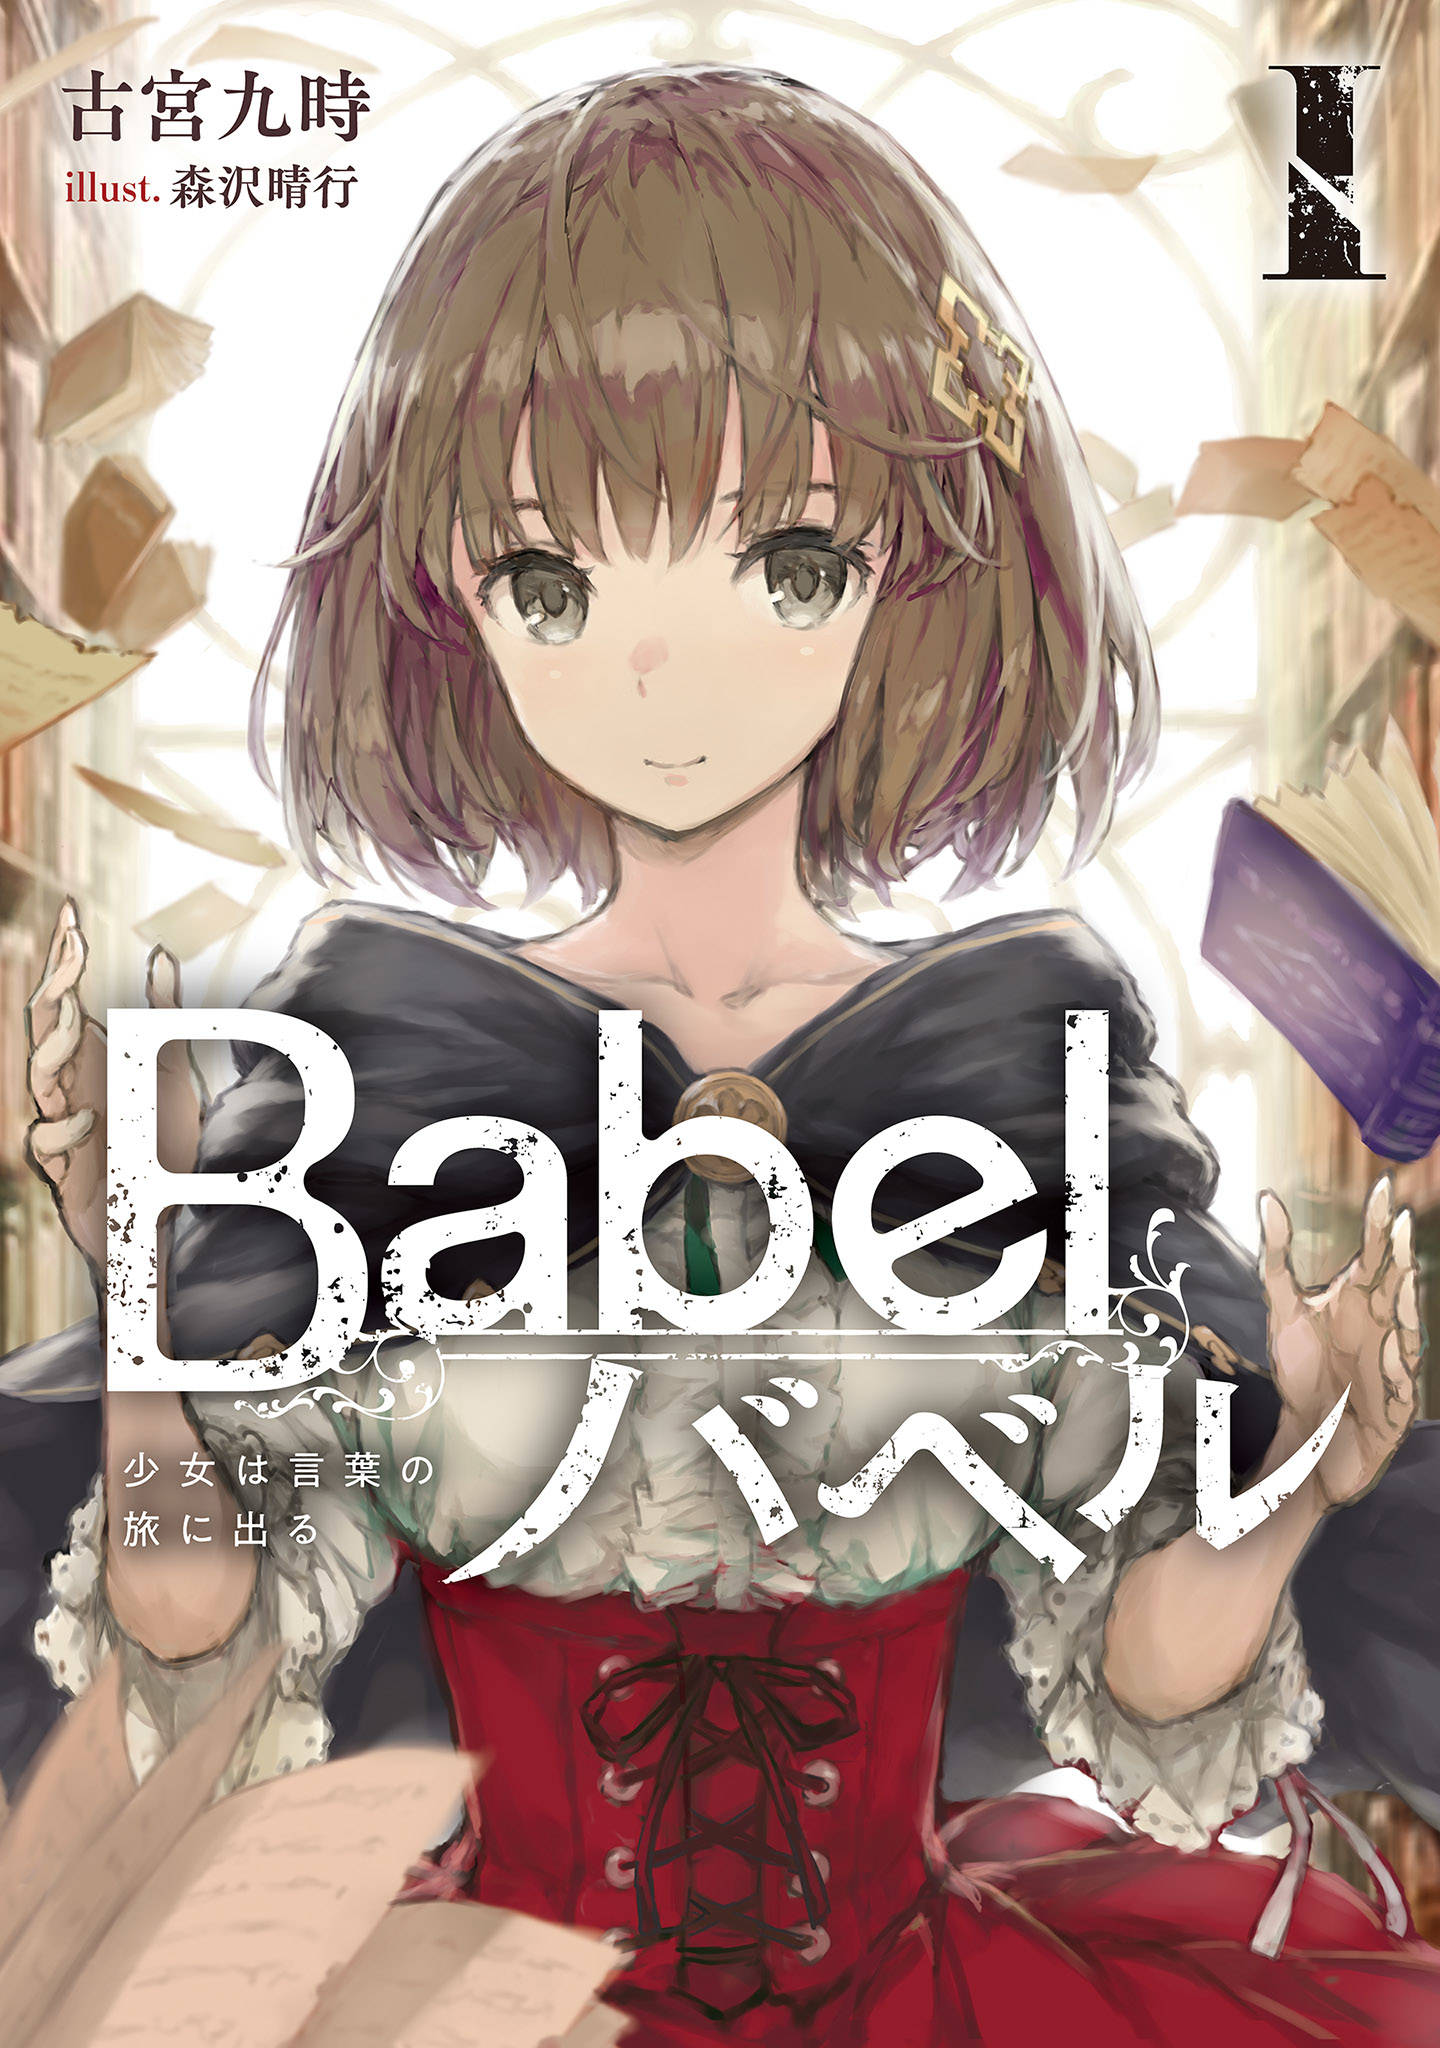 Babel I 少女は言葉の旅に出る 漫画 書籍を無料試し読み Epub Tw